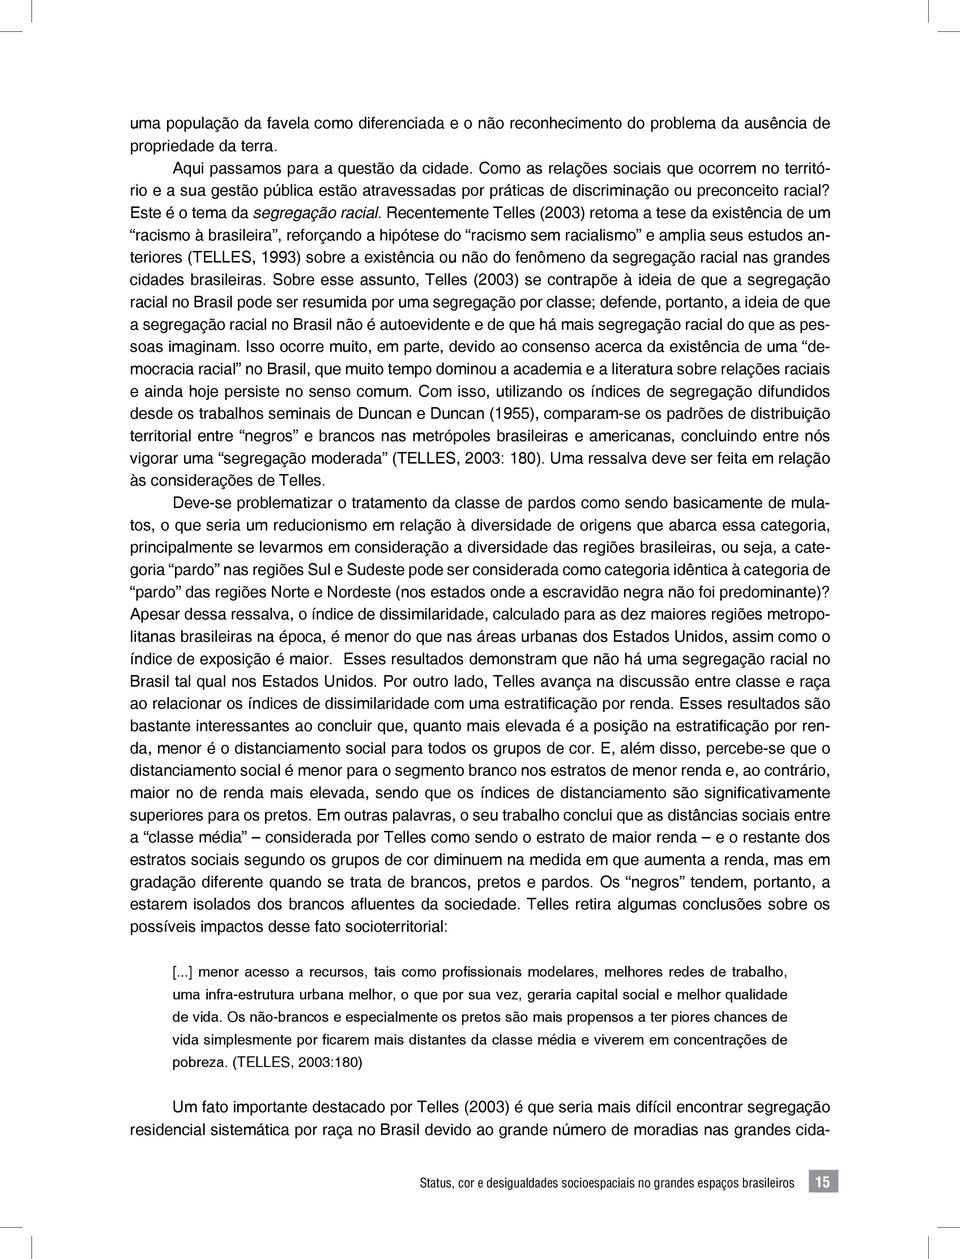 Recentemente Telles (2003) retoma a tese da existência de um racismo à brasileira, reforçando a hipótese do racismo sem racialismo e amplia seus estudos anteriores (TELLES, 1993) sobre a existência